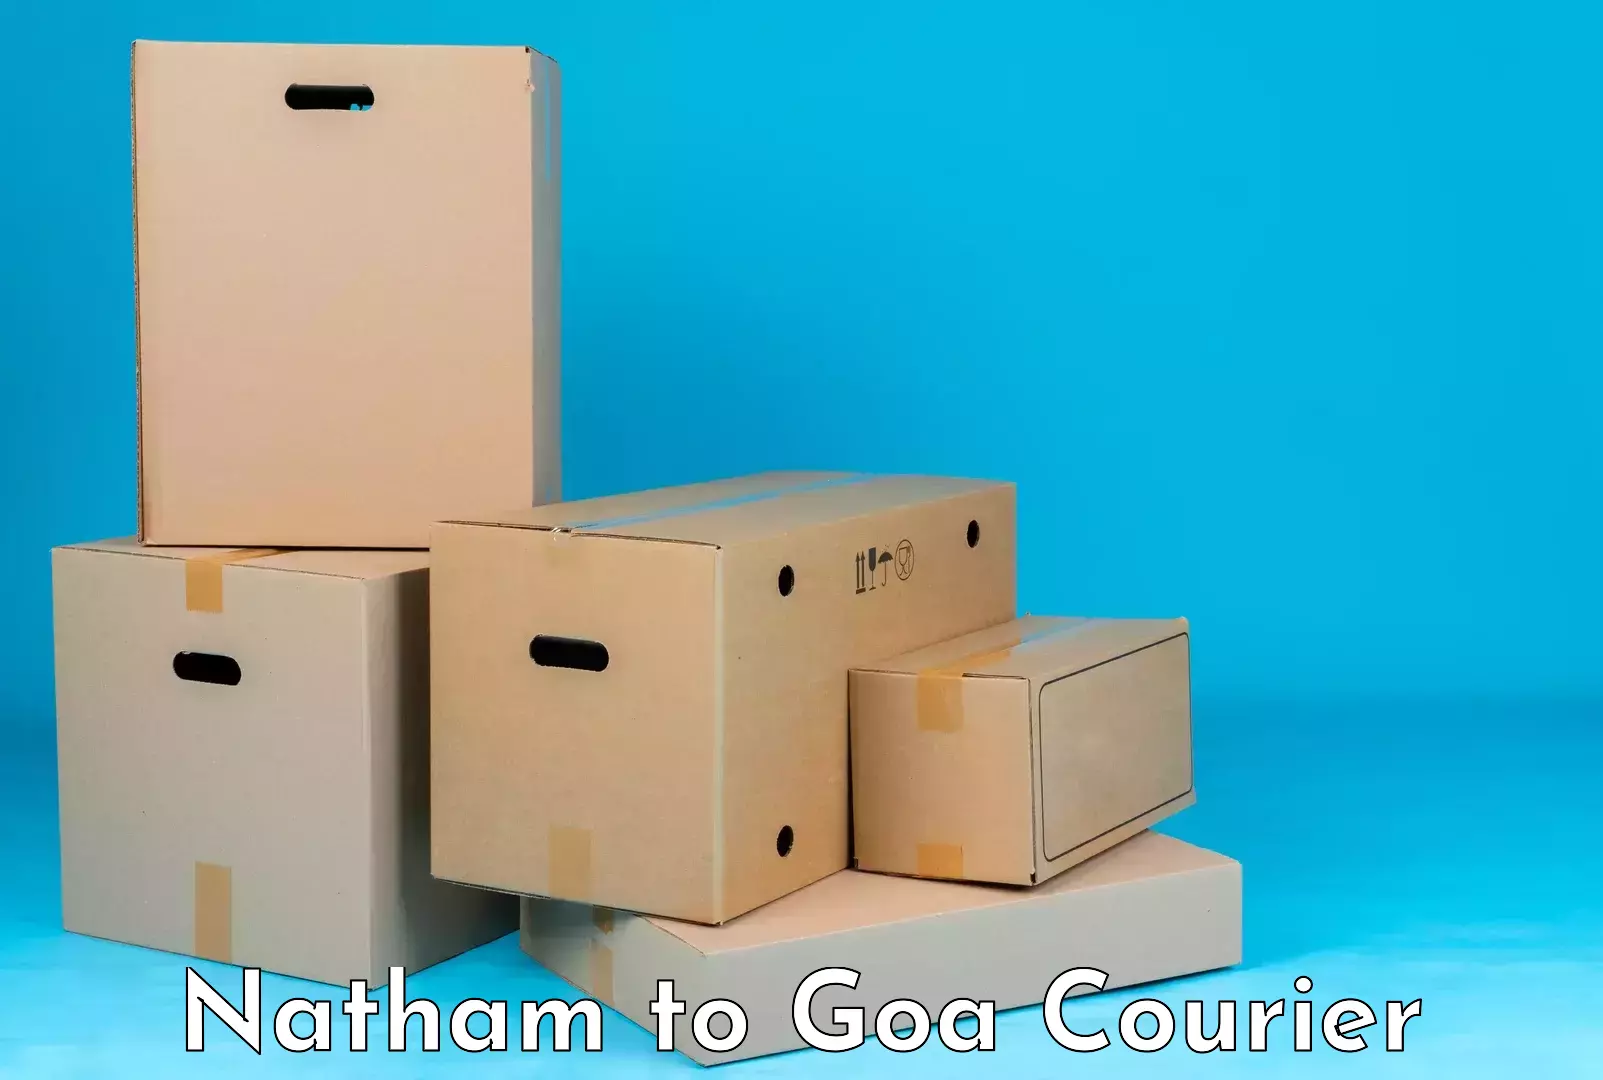 Luggage delivery optimization Natham to IIT Goa